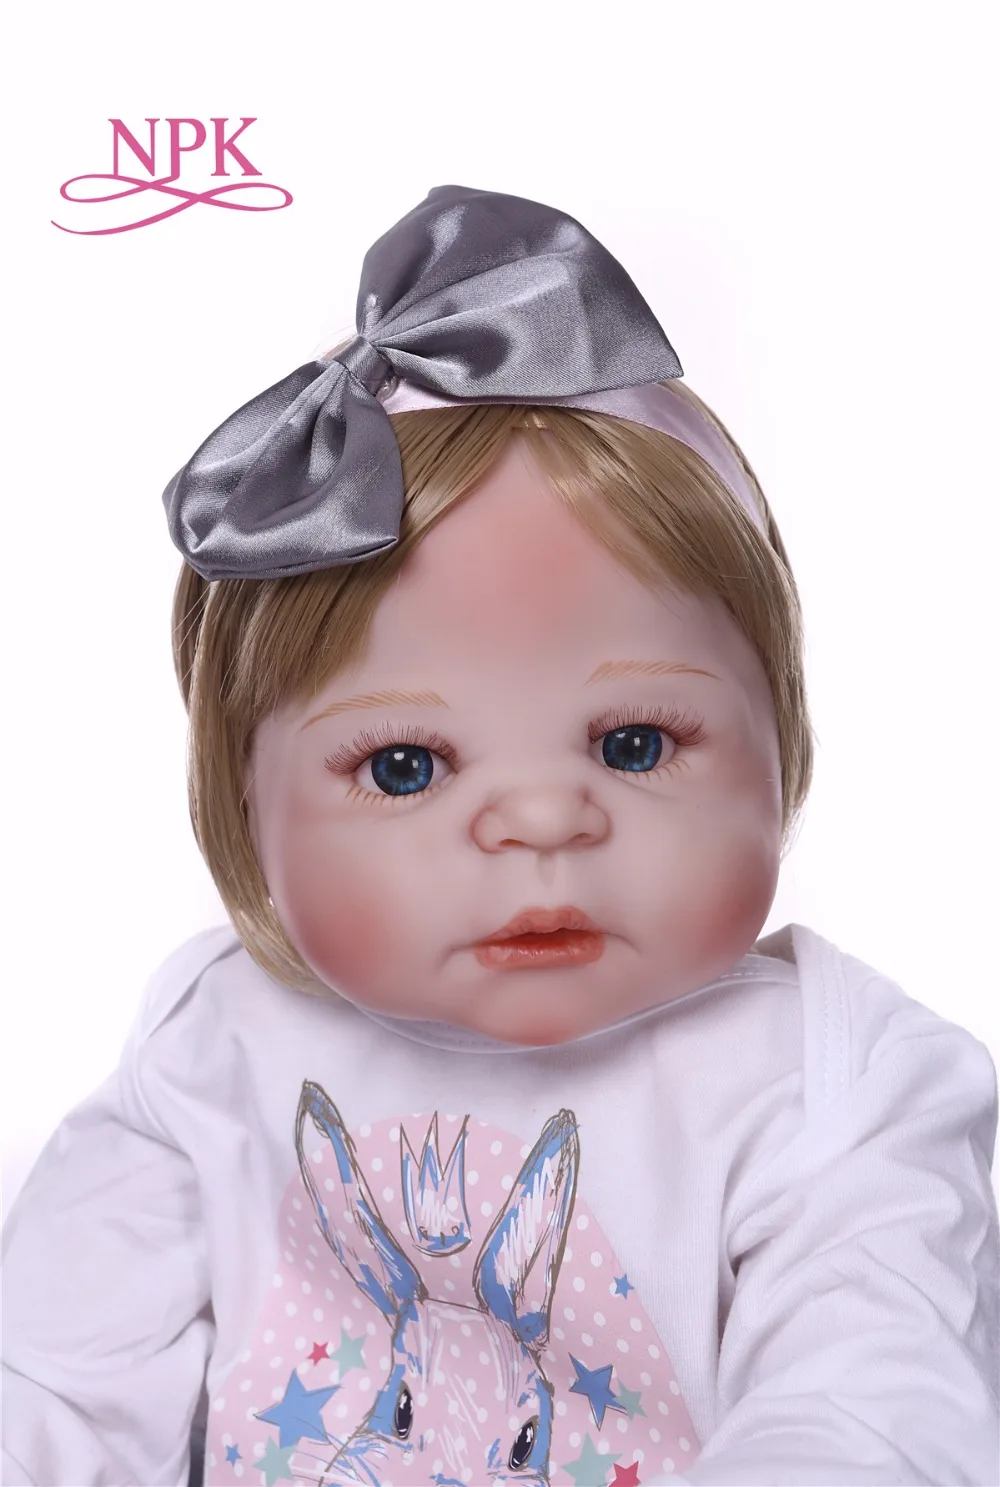 NPK Boneca Reborn современные полностью виниловые игрушки Reborn Baby Doll, реалистичные детские игрушки на День рождения, Рождественский подарок, ГОРЯЧАЯ ИГРУШКА для девочки